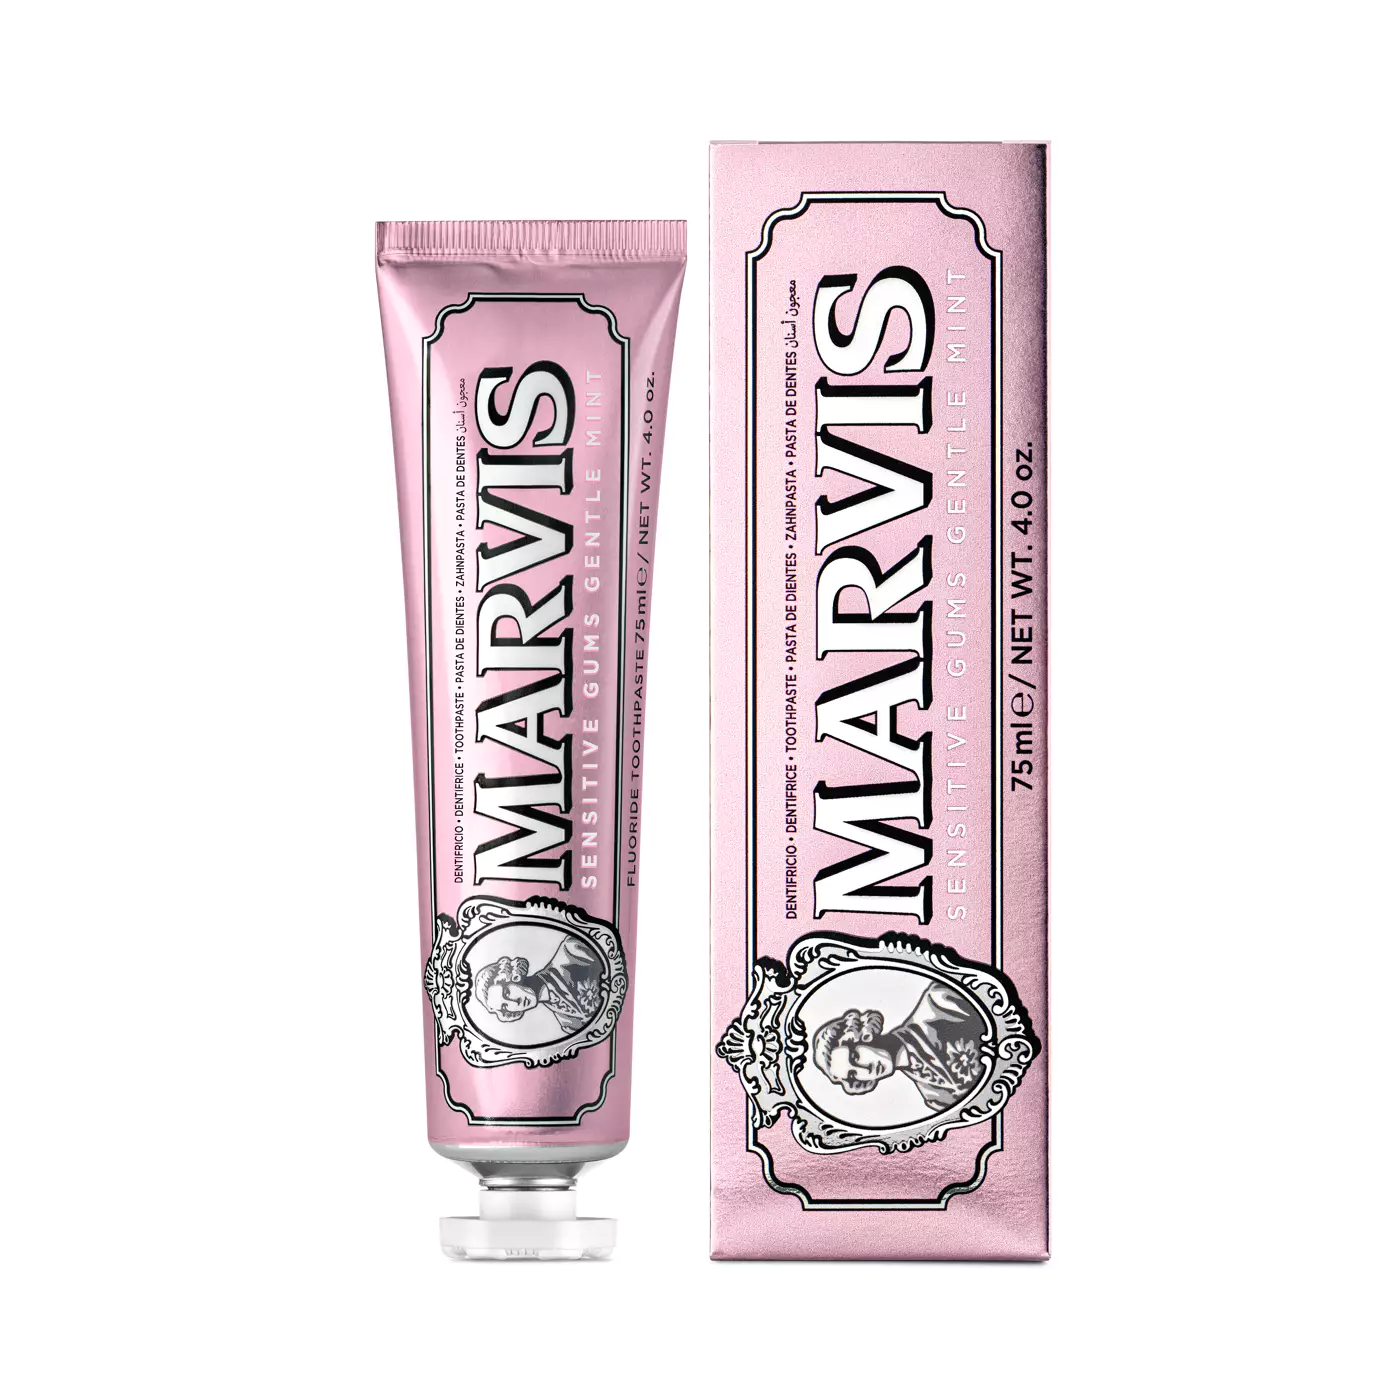 Зубная паста Marvis Sensitive Gums Gentle Mint для чувствительных десен, 75 мл после сталина реформы 1950 х годов в контексте советской и постсоветской истории